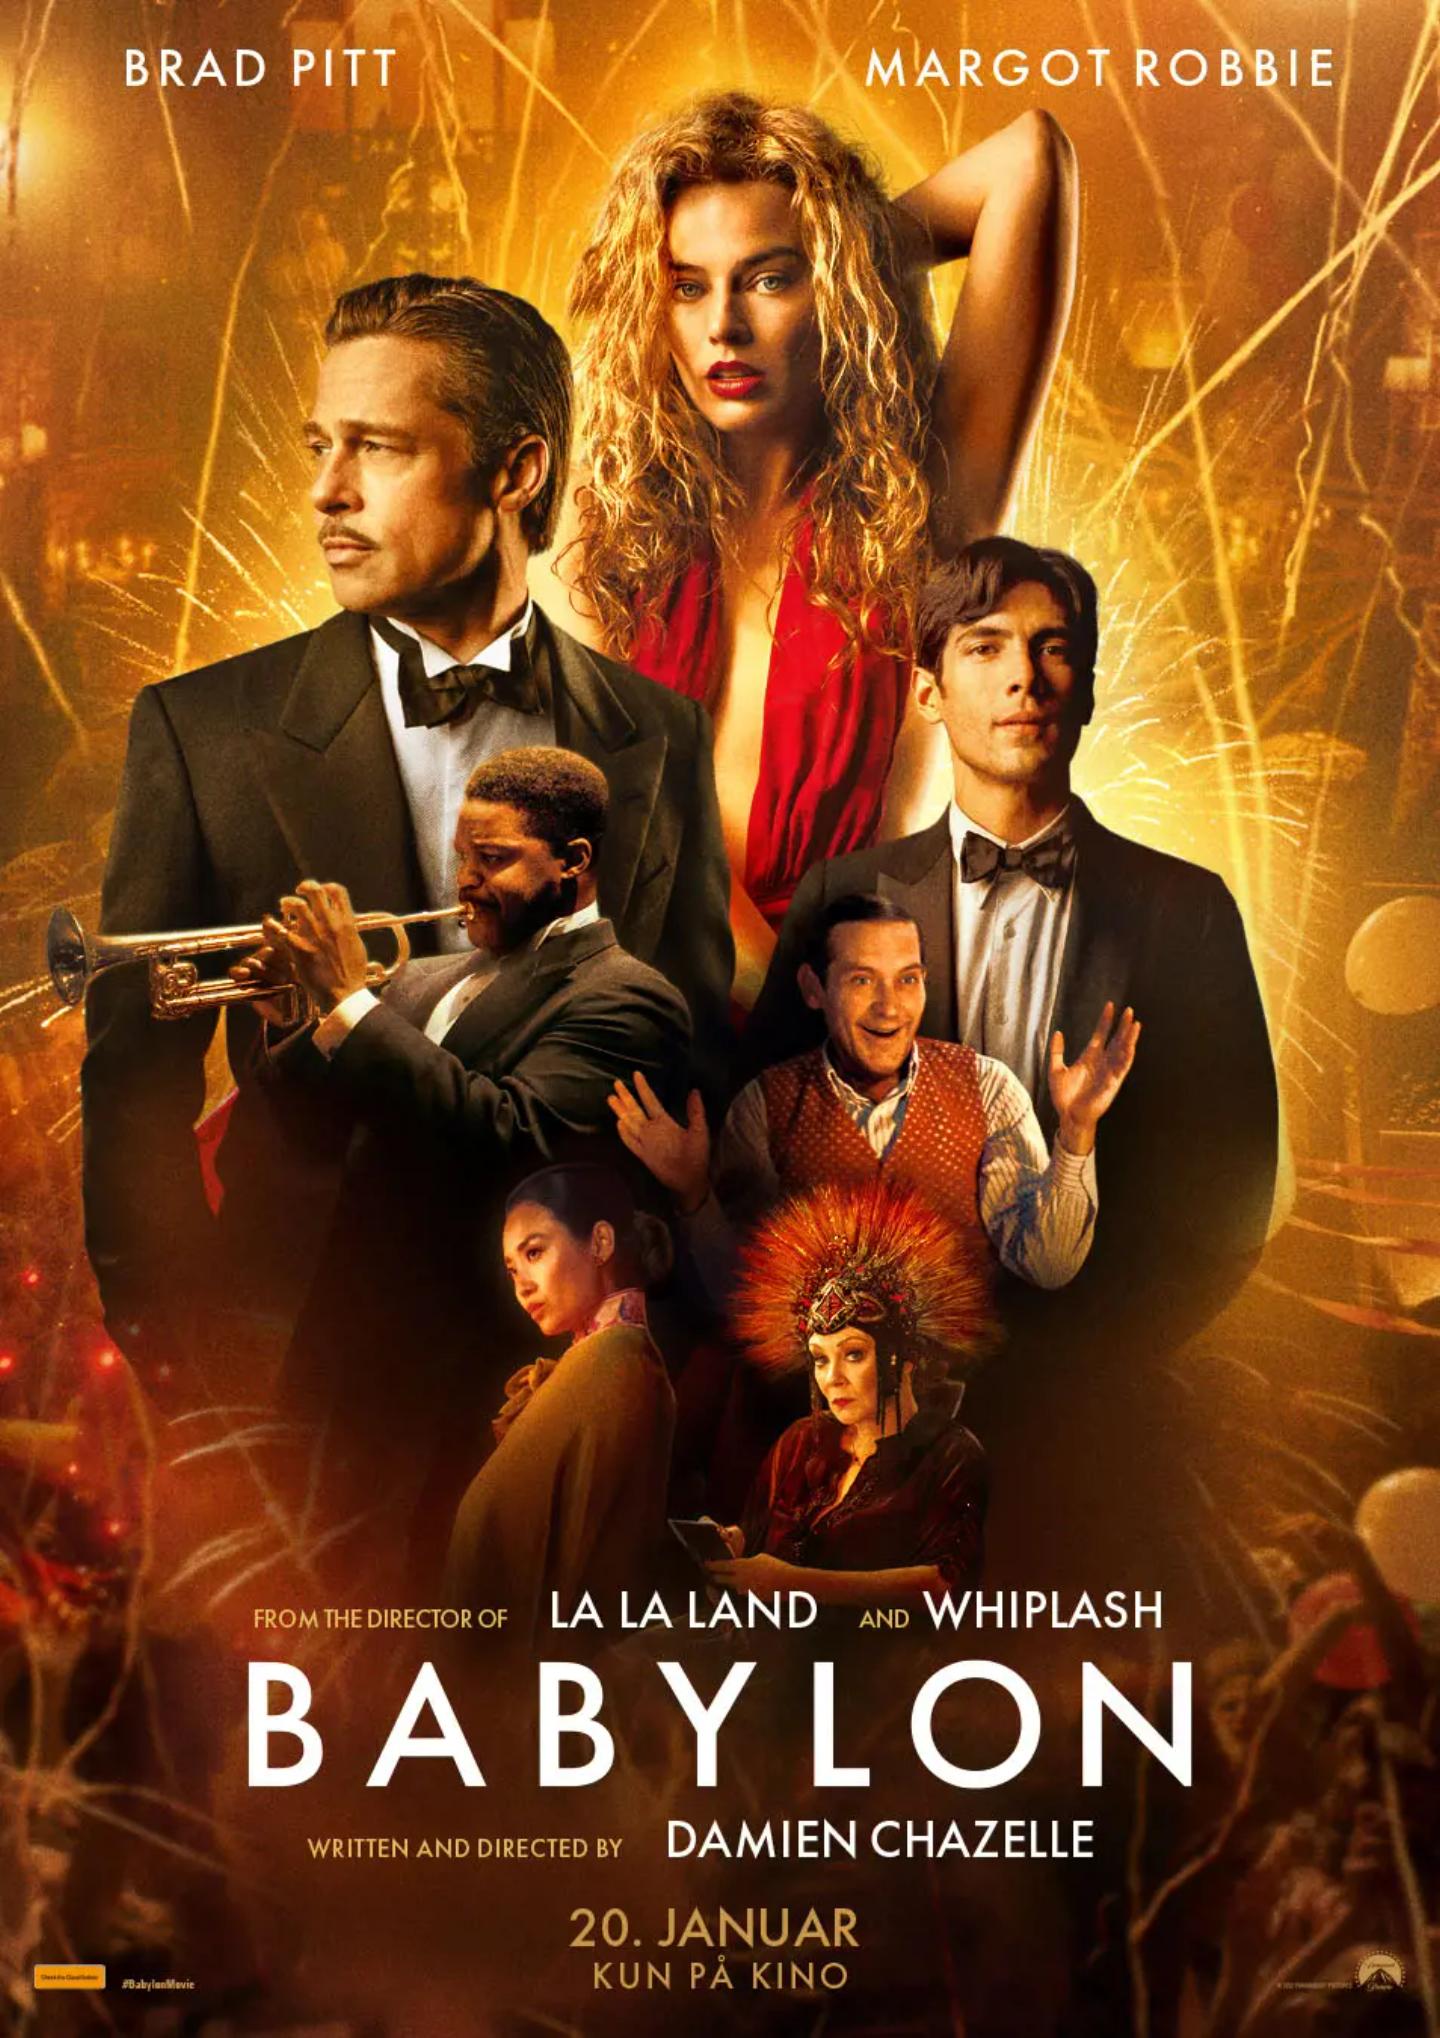 Plakat for 'Babylon'